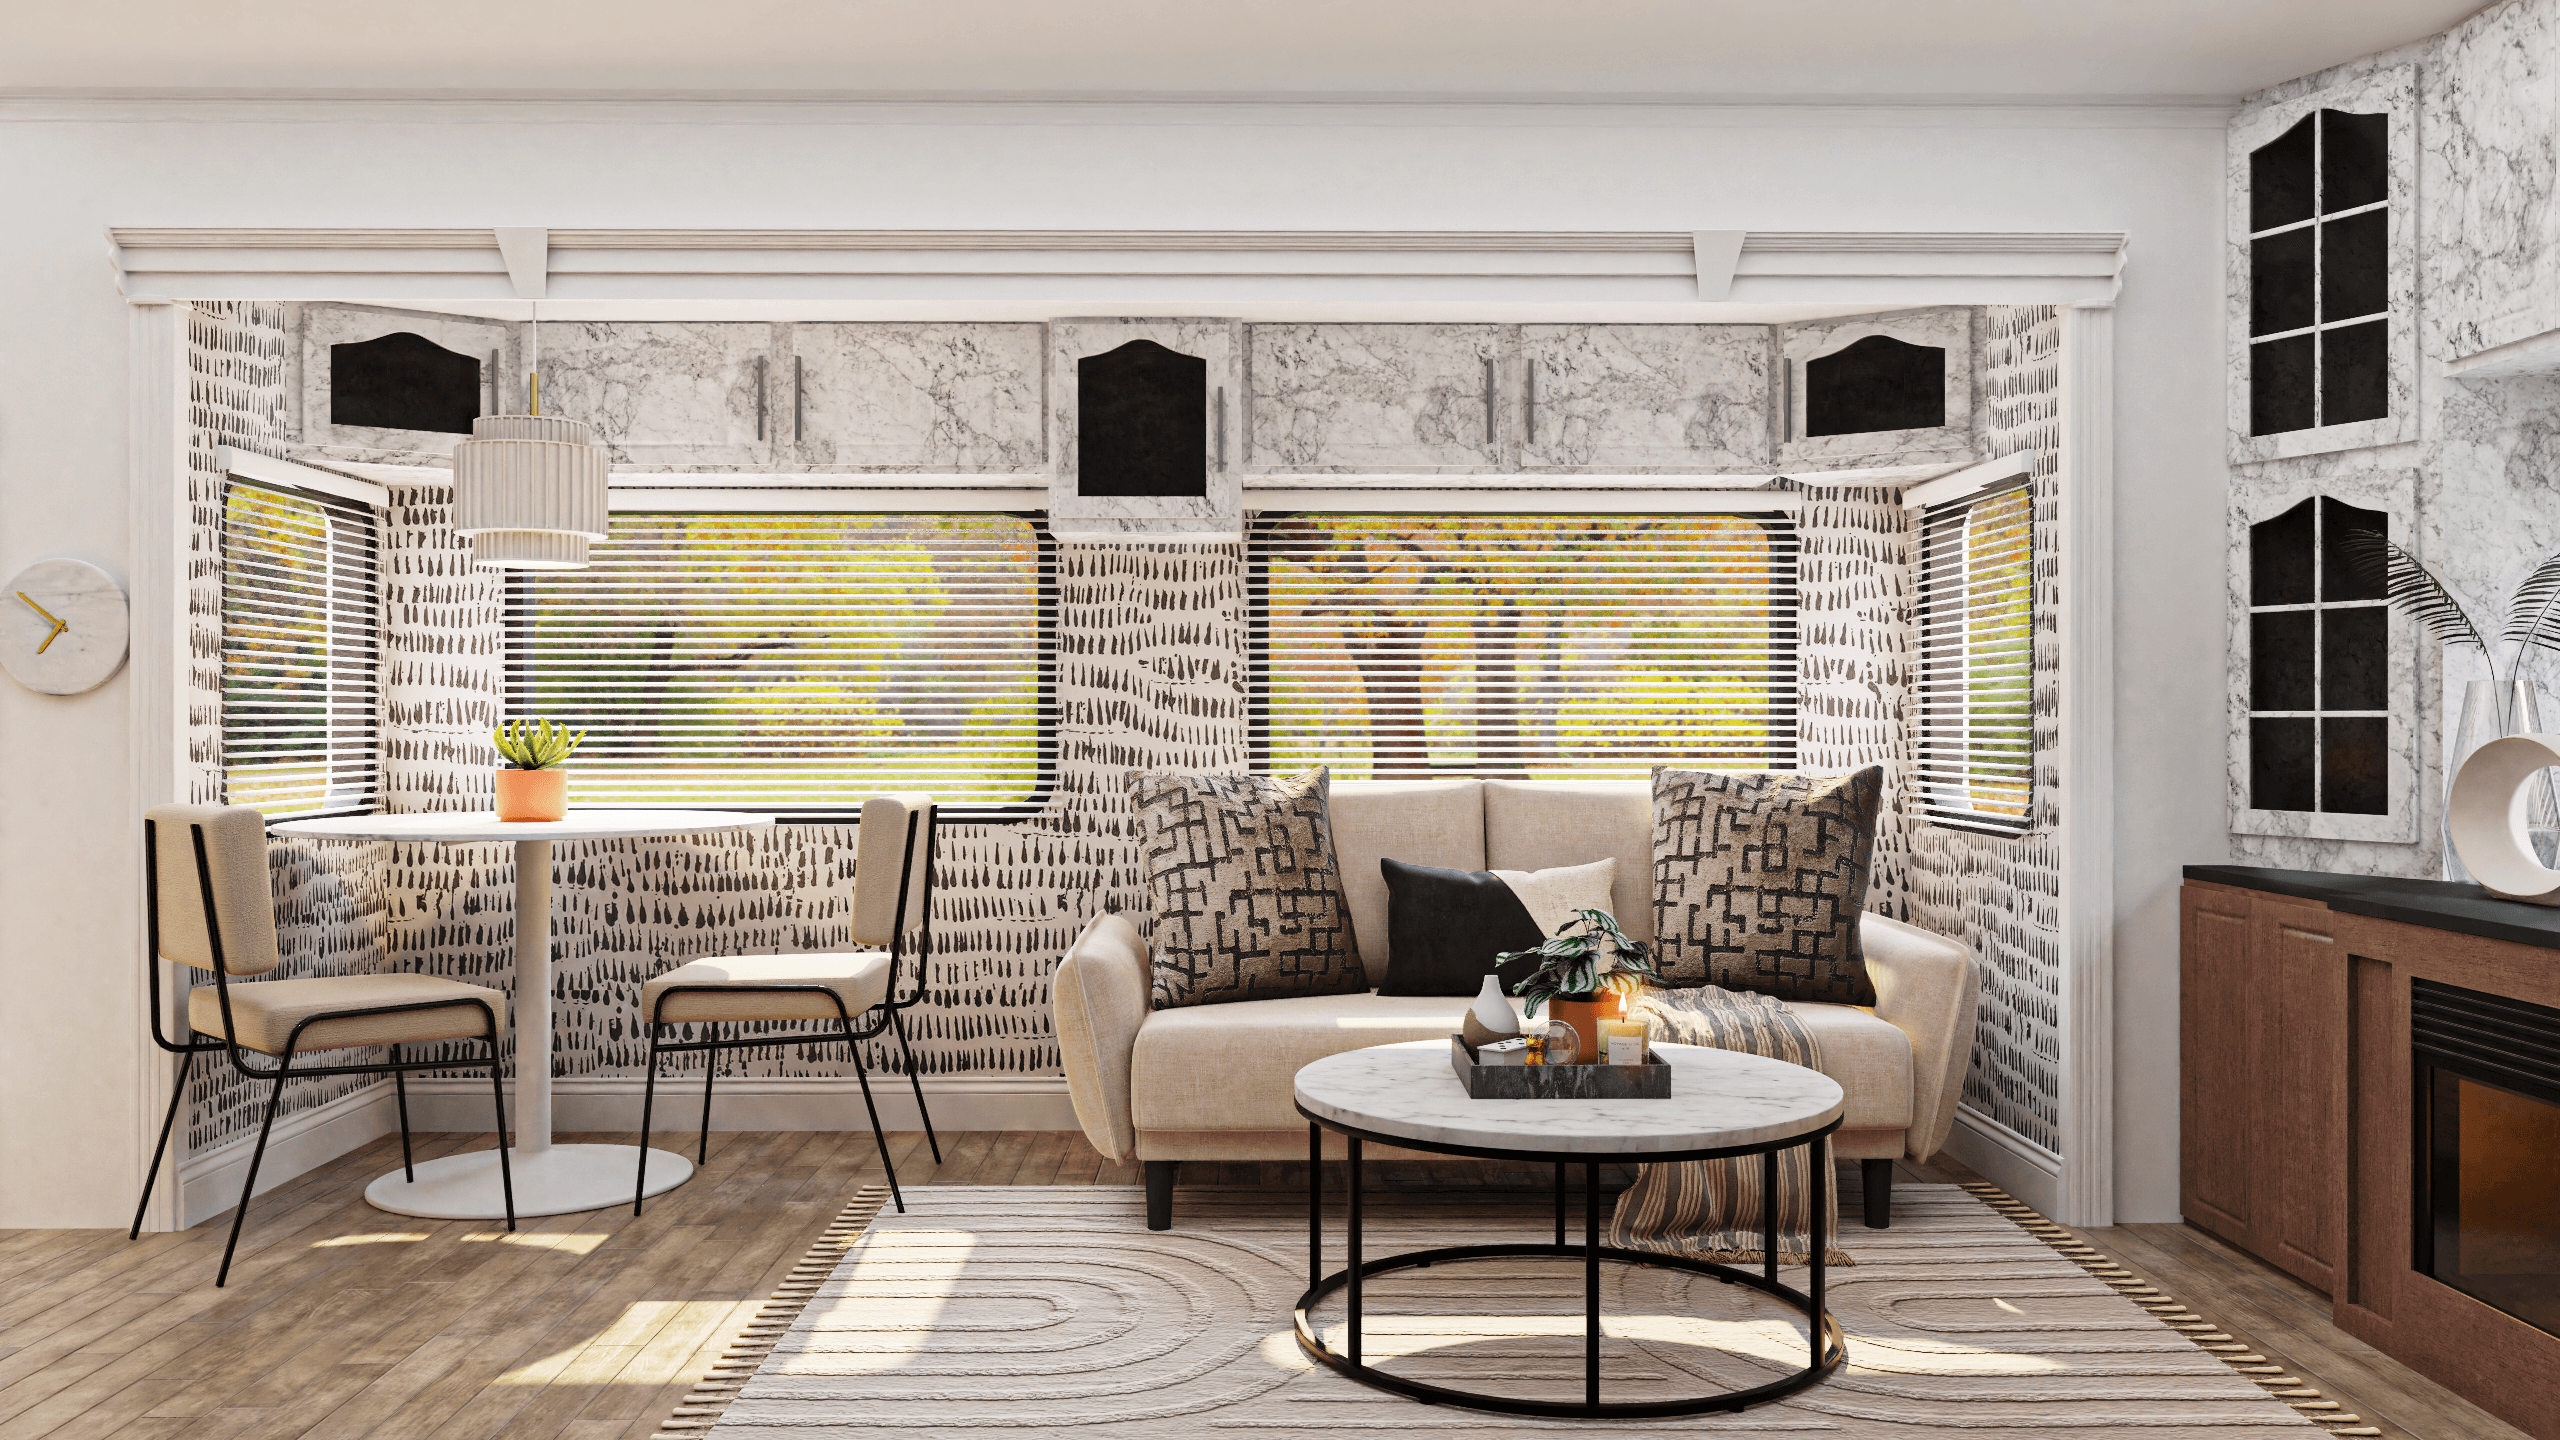 Tiger Striped Wallpaper: A Bright Modern Studio 